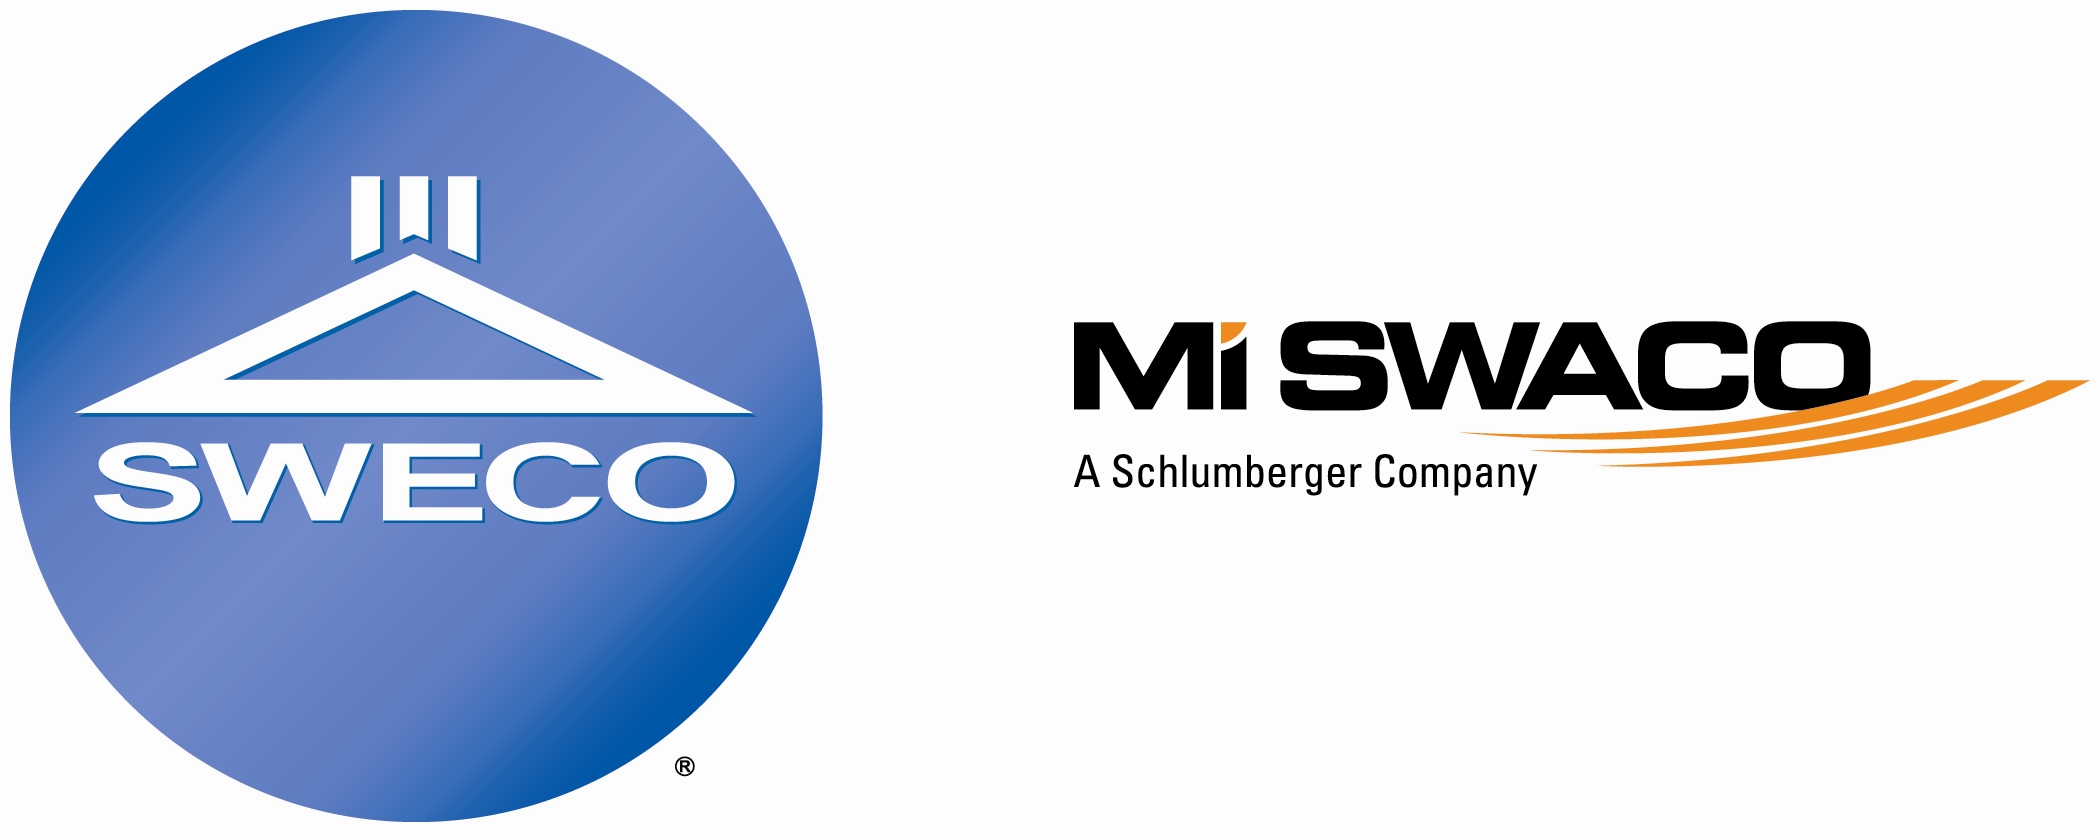 SWECO/M-I SWACO Florence Facility Company Logo